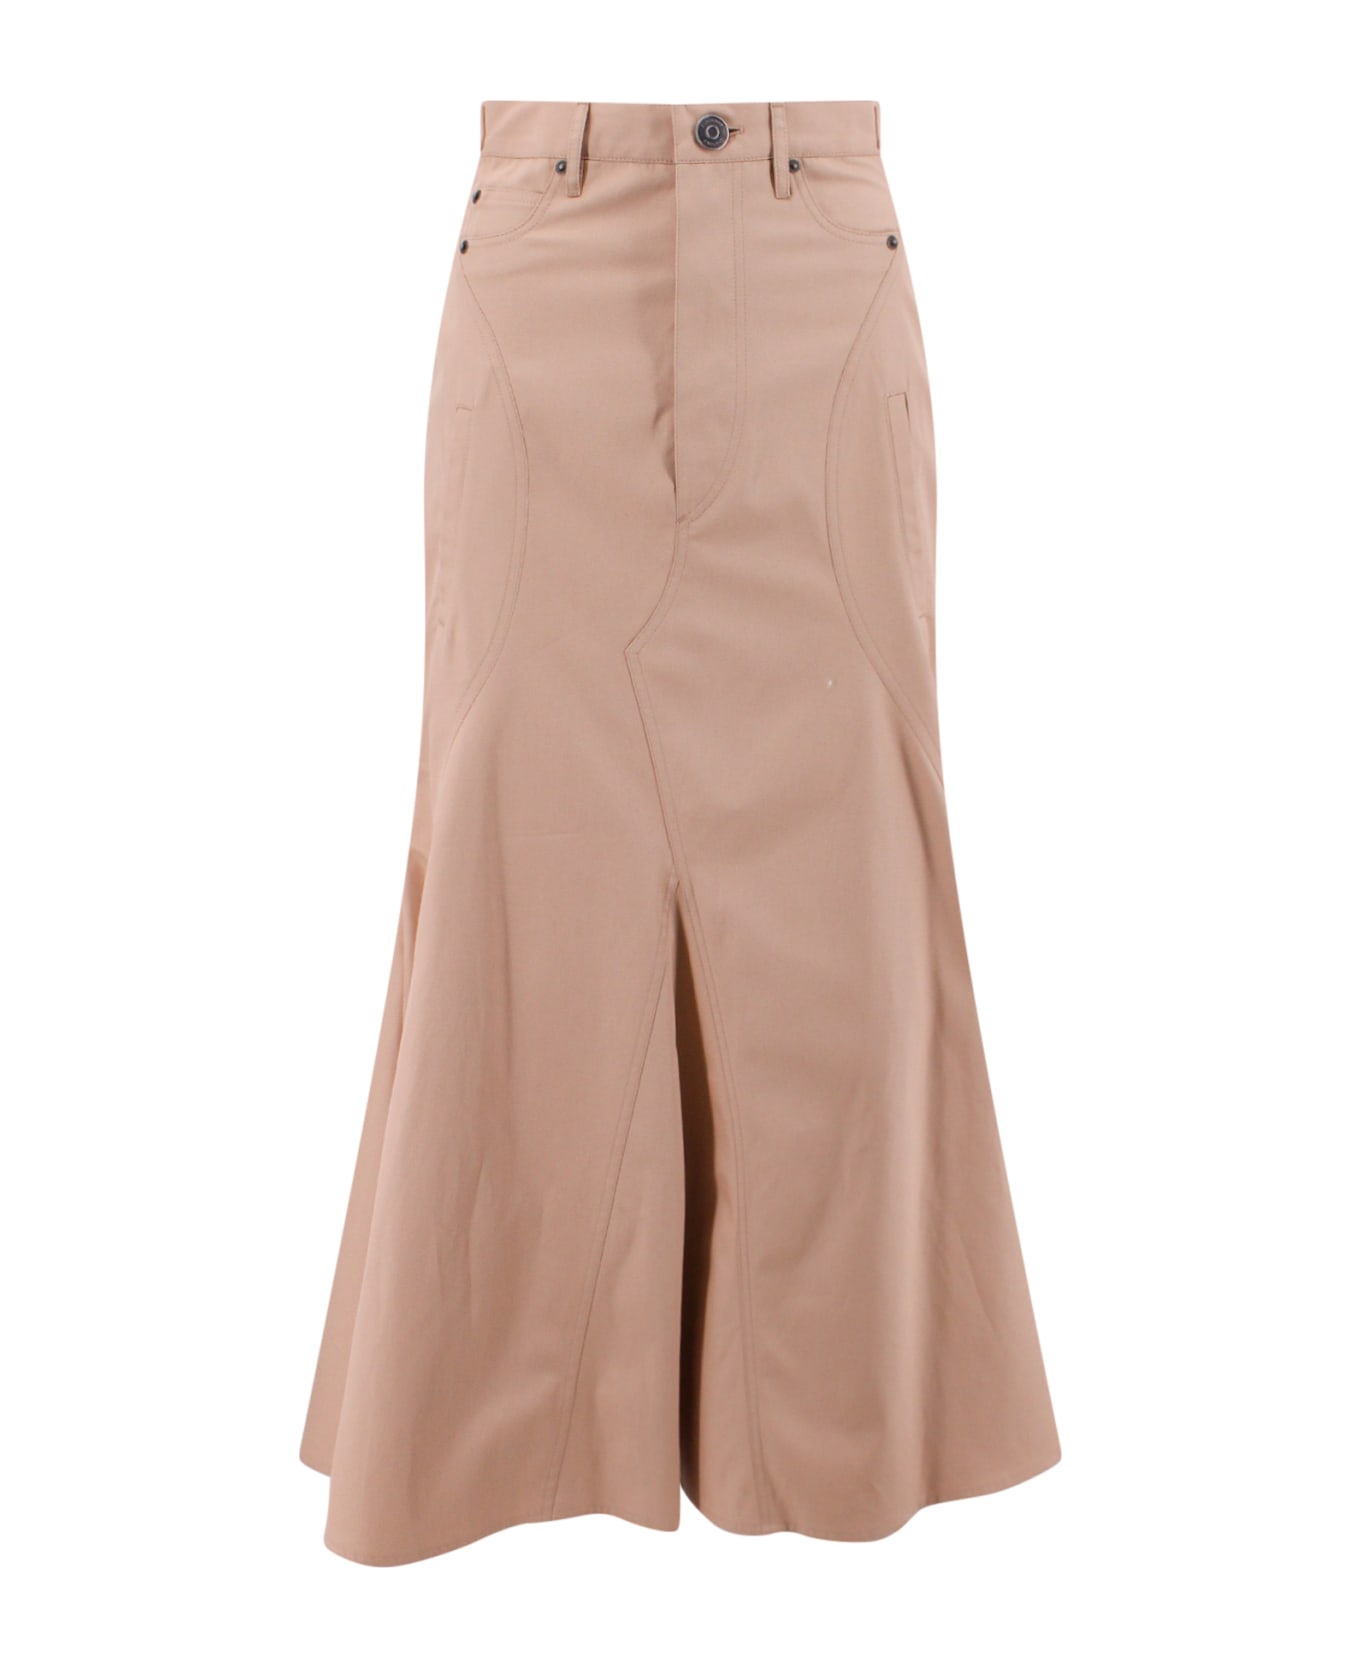 Burberry Cotton Gabardine Long Skirt - Beige スカート